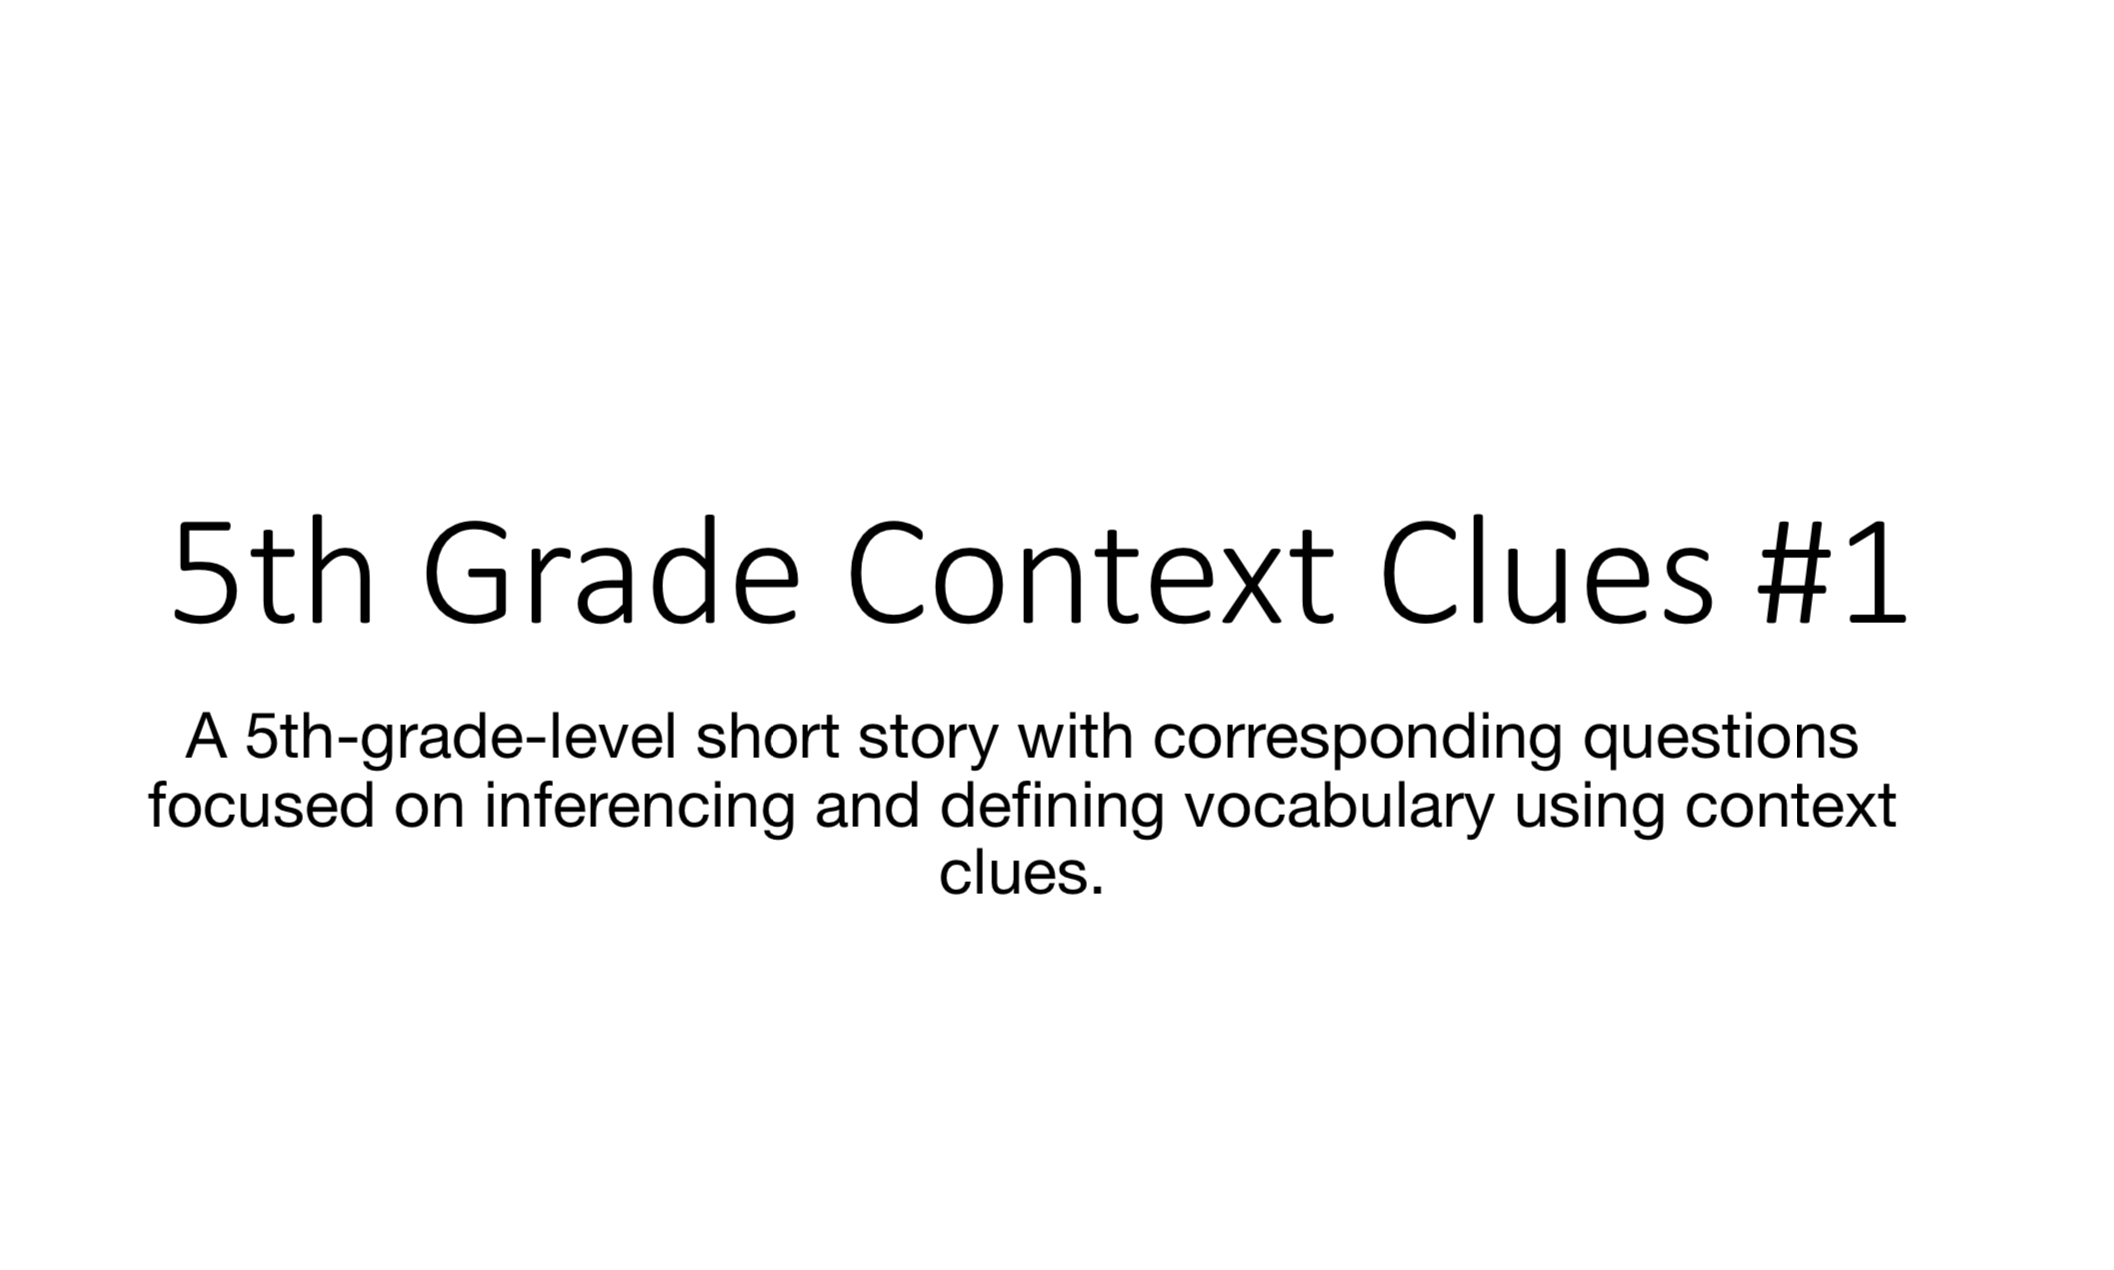 5th Grade Context Clues #1 image